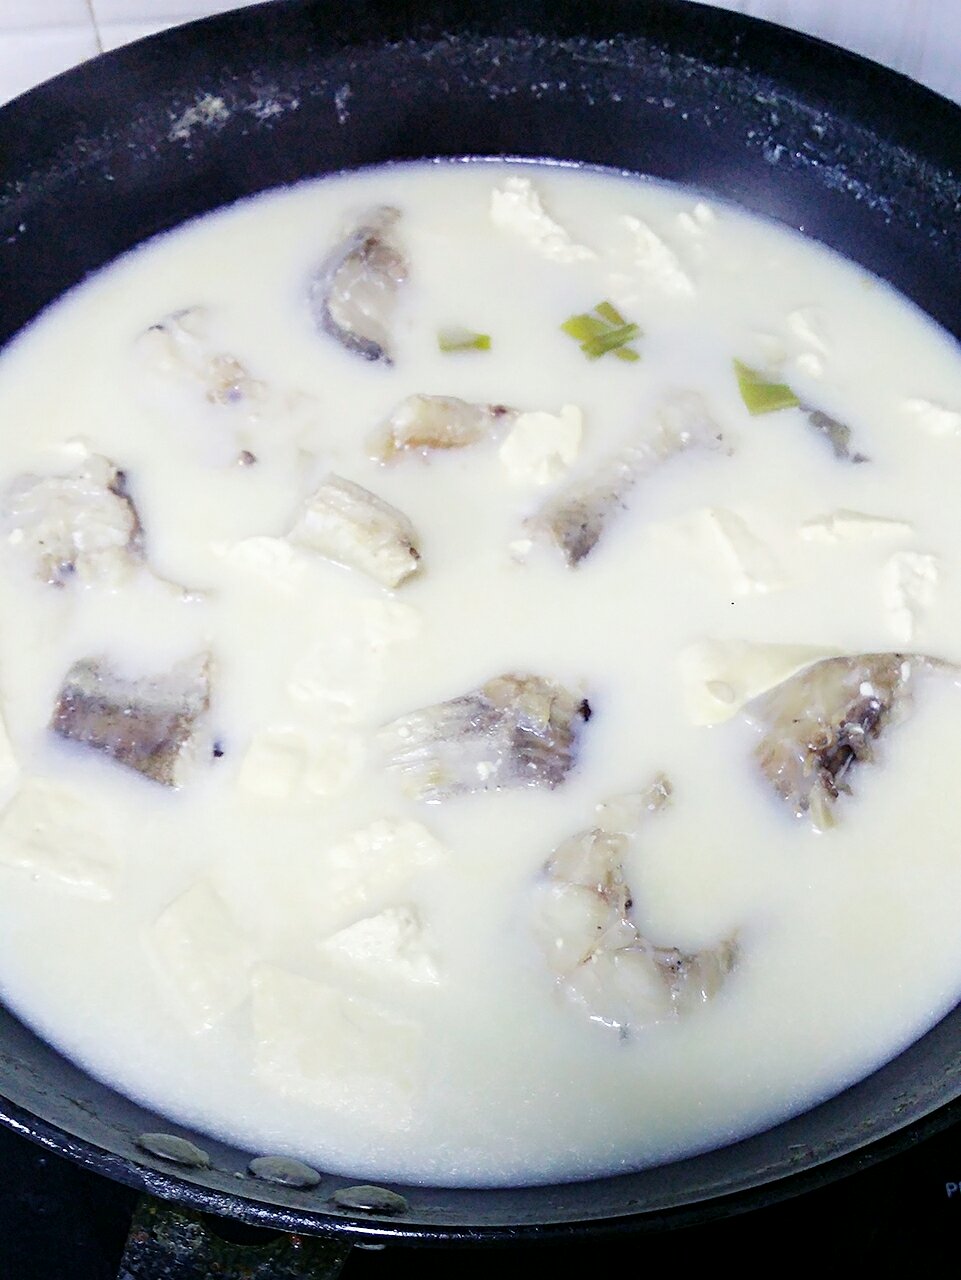 鳕鱼豆腐汤的做法